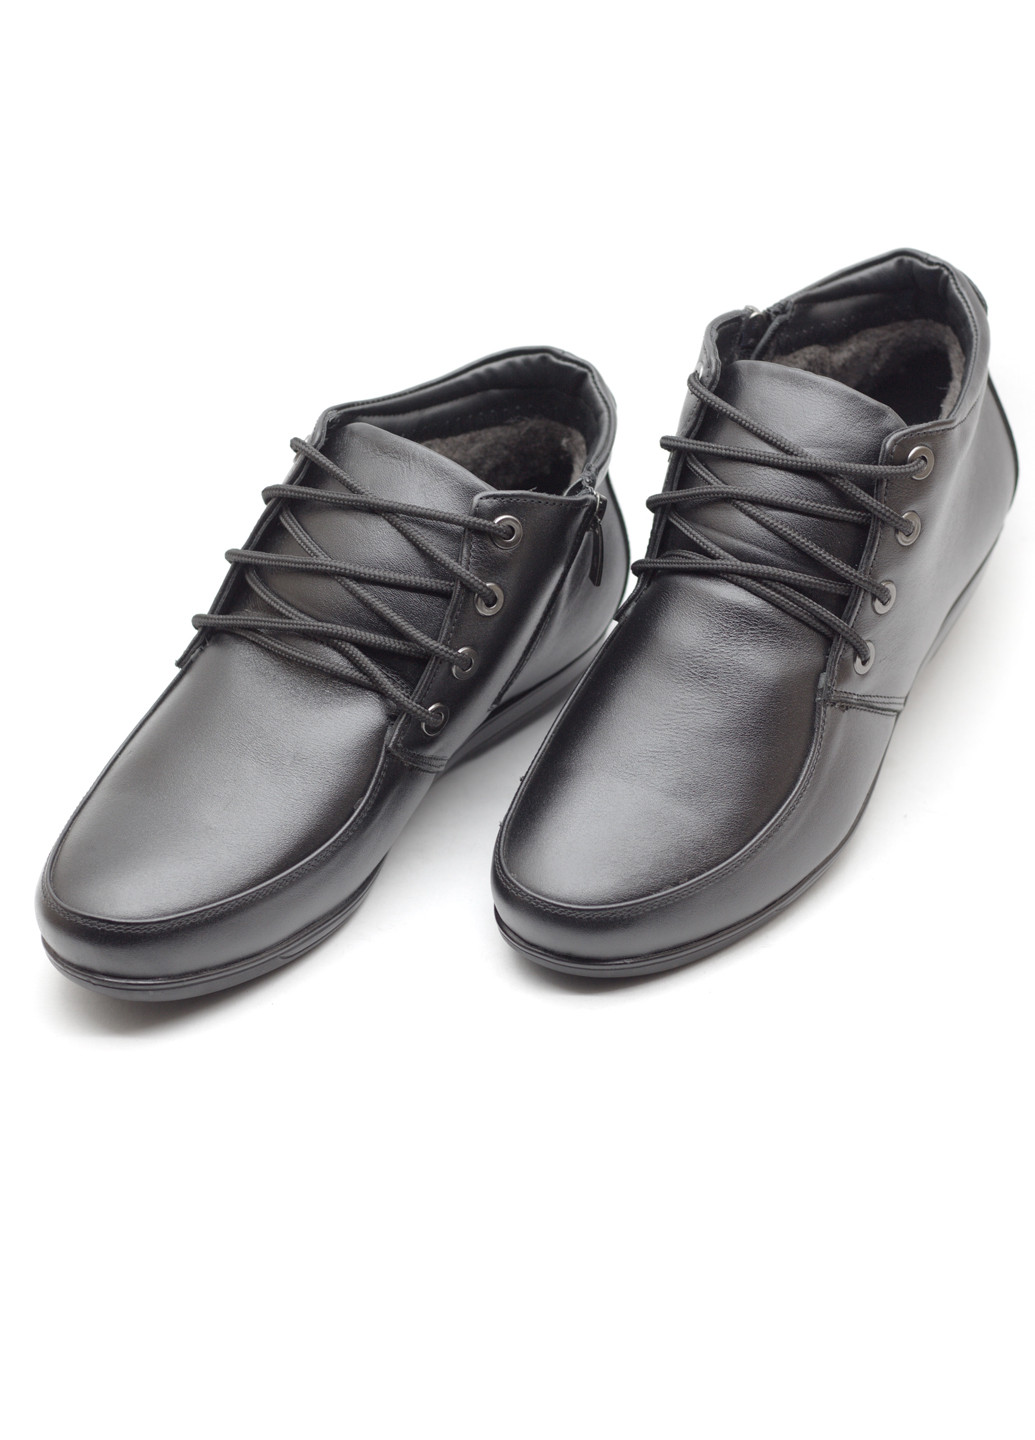 Черные зимние ботинки мужские из натуральной кожи Zlett